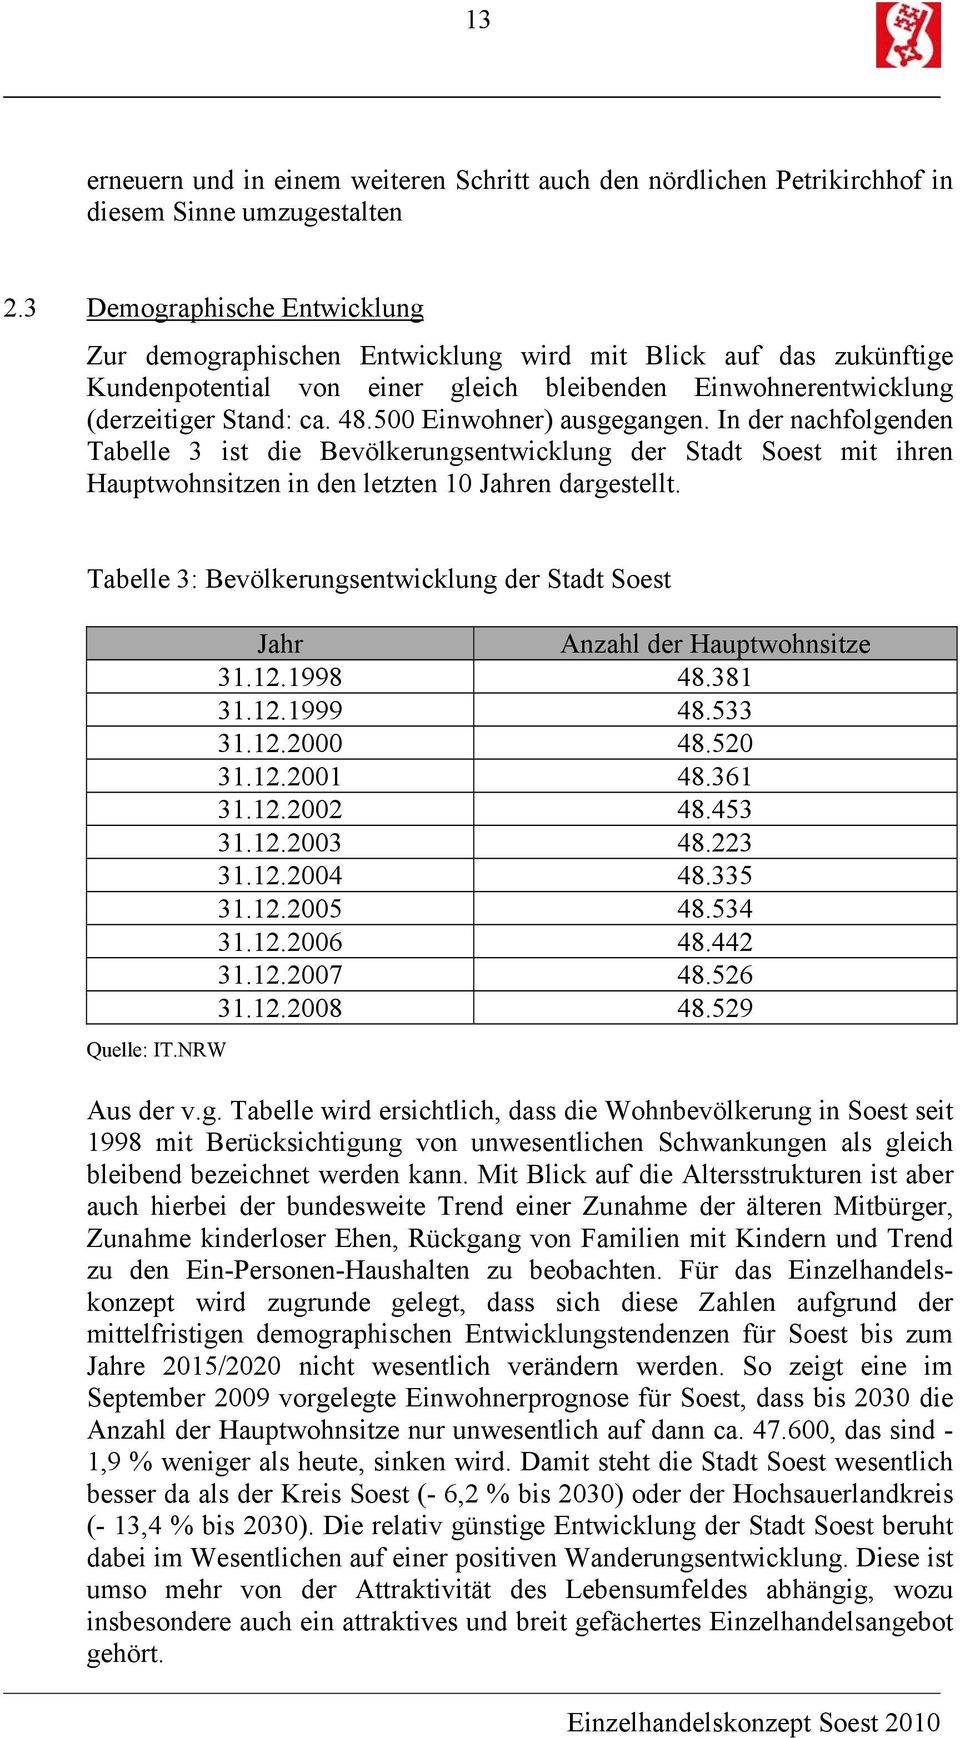 500 Einwohner) ausgegangen. In der nachfolgenden Tabelle 3 ist die Bevölkerungsentwicklung der Stadt Soest mit ihren Hauptwohnsitzen in den letzten 10 Jahren dargestellt.